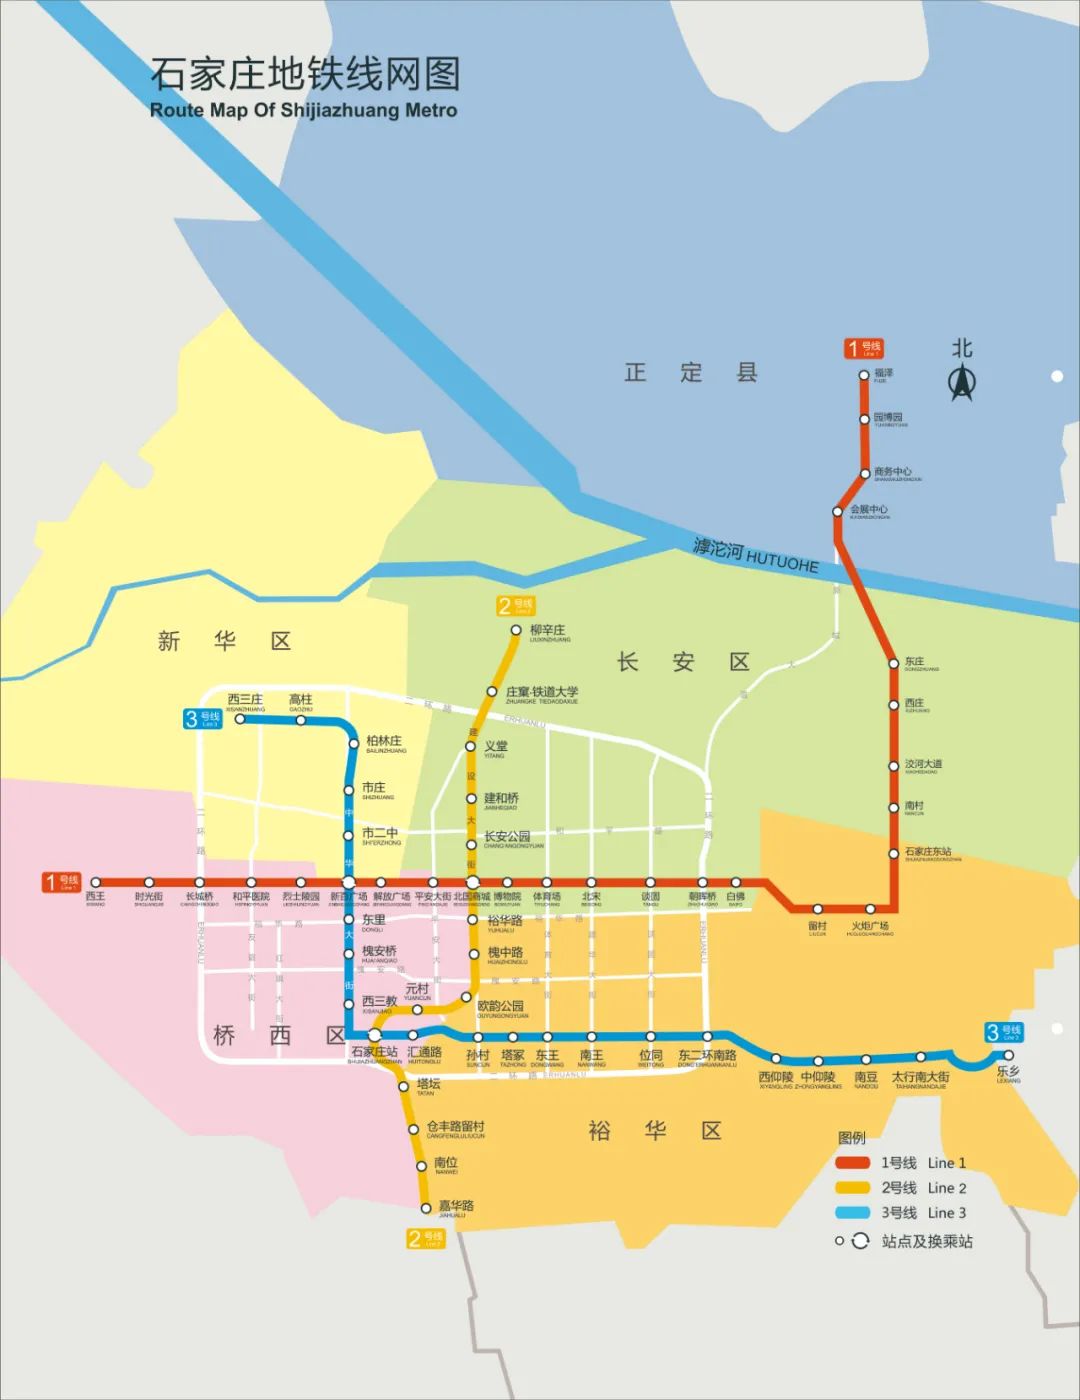 今天石家庄地铁3号线一期东段及二期开通运营